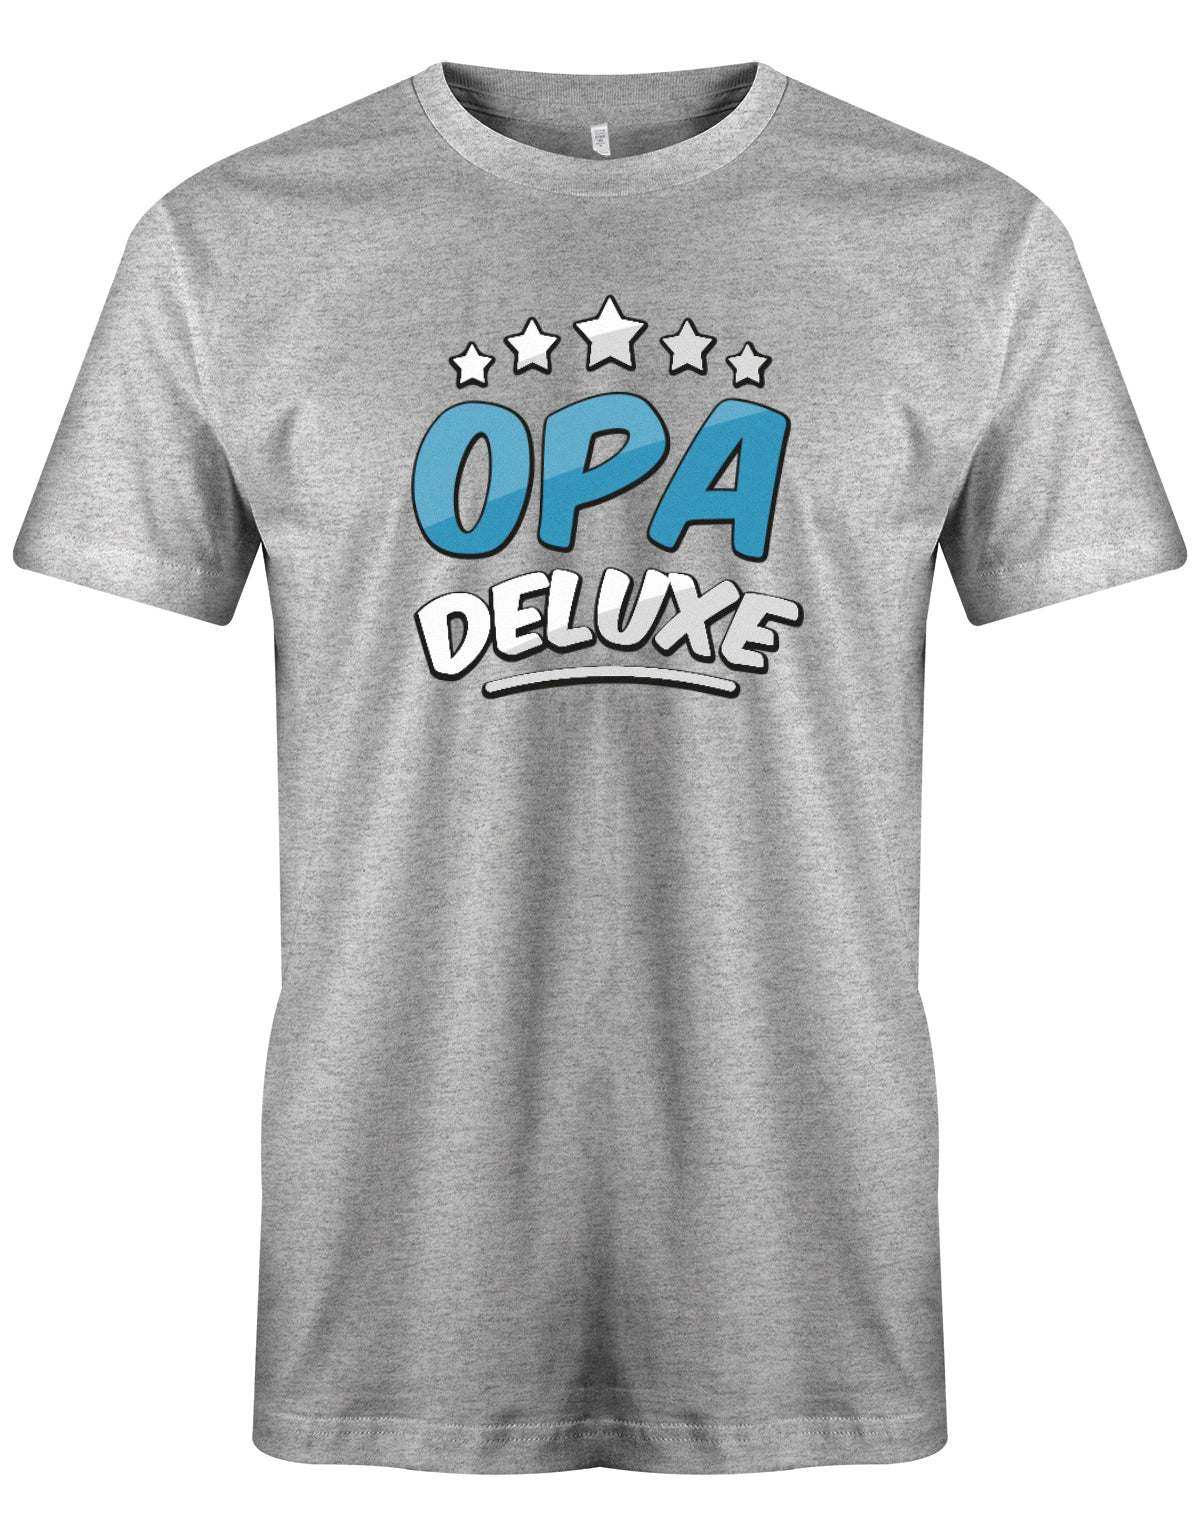 Opa T-Shirt – 5 Sterne Opa Deluxe. Grau